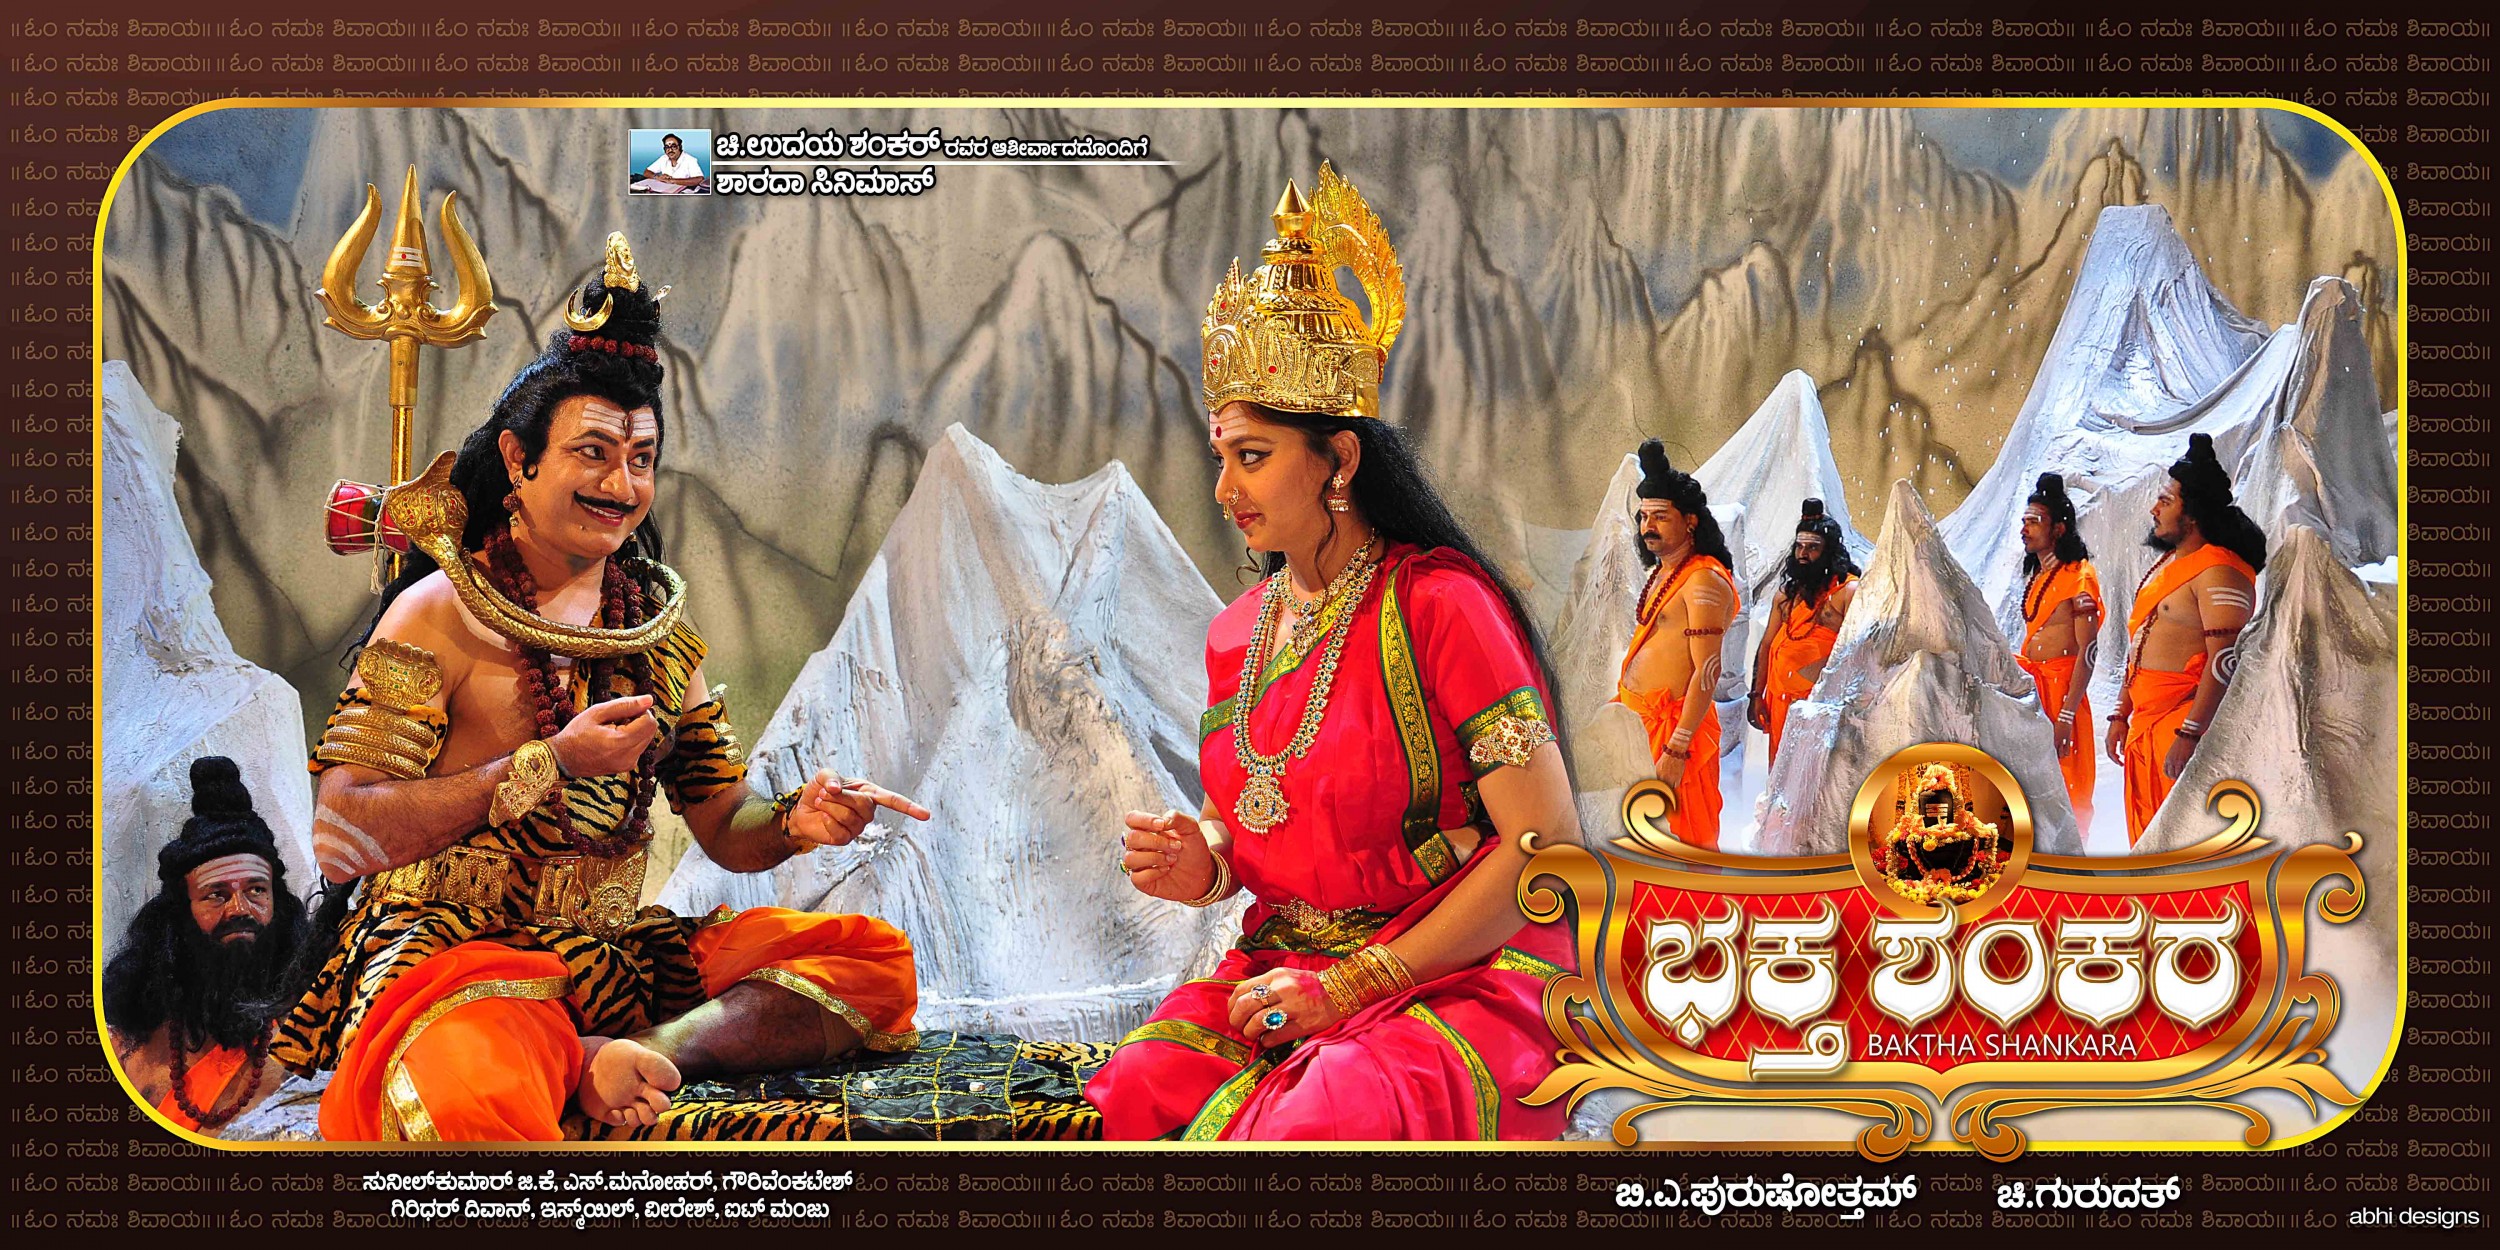 Mega Sized Movie Poster Image for Baktha Shankara (#7 of 10)